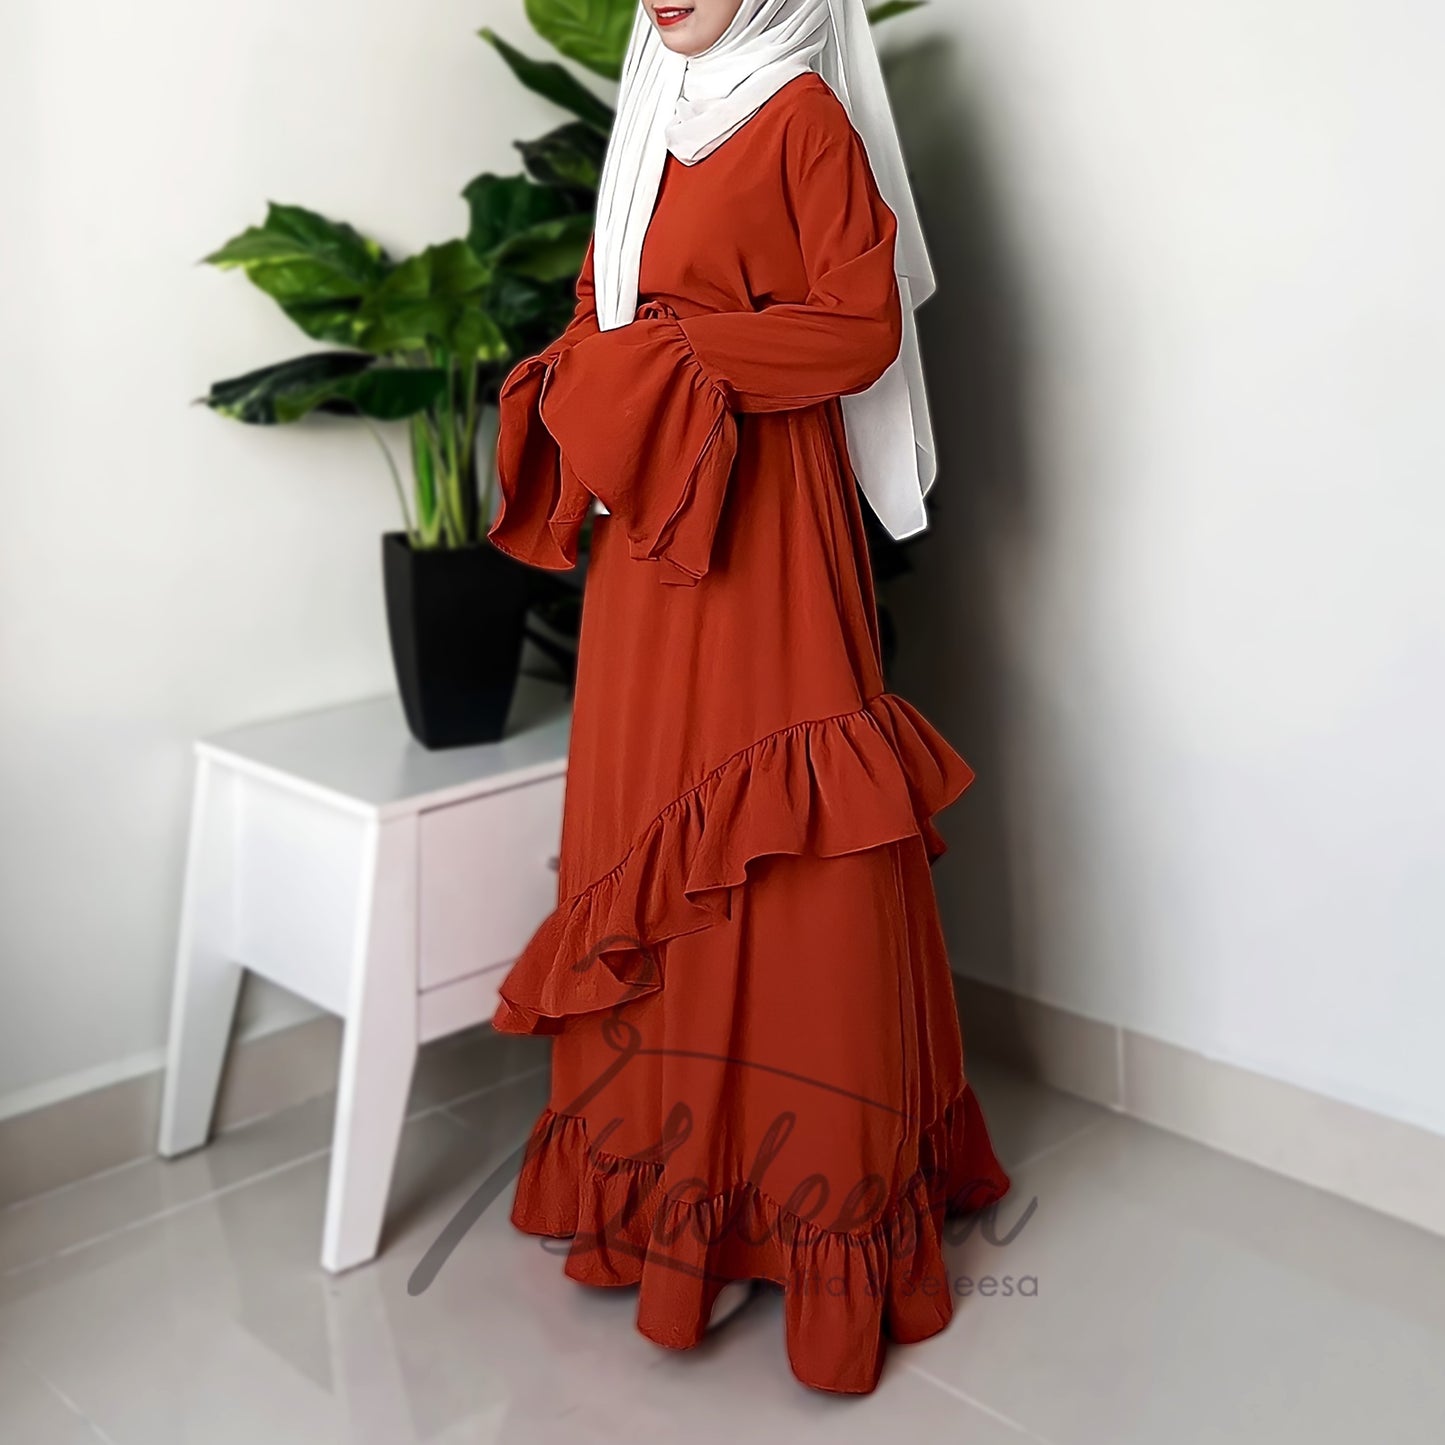 LALEESA LD292274 DRESS WAFA Patchwork Pleated Ruffle Hem Dress Muslimah Dress Women Dress Jubah Muslimah Jubah Abaya